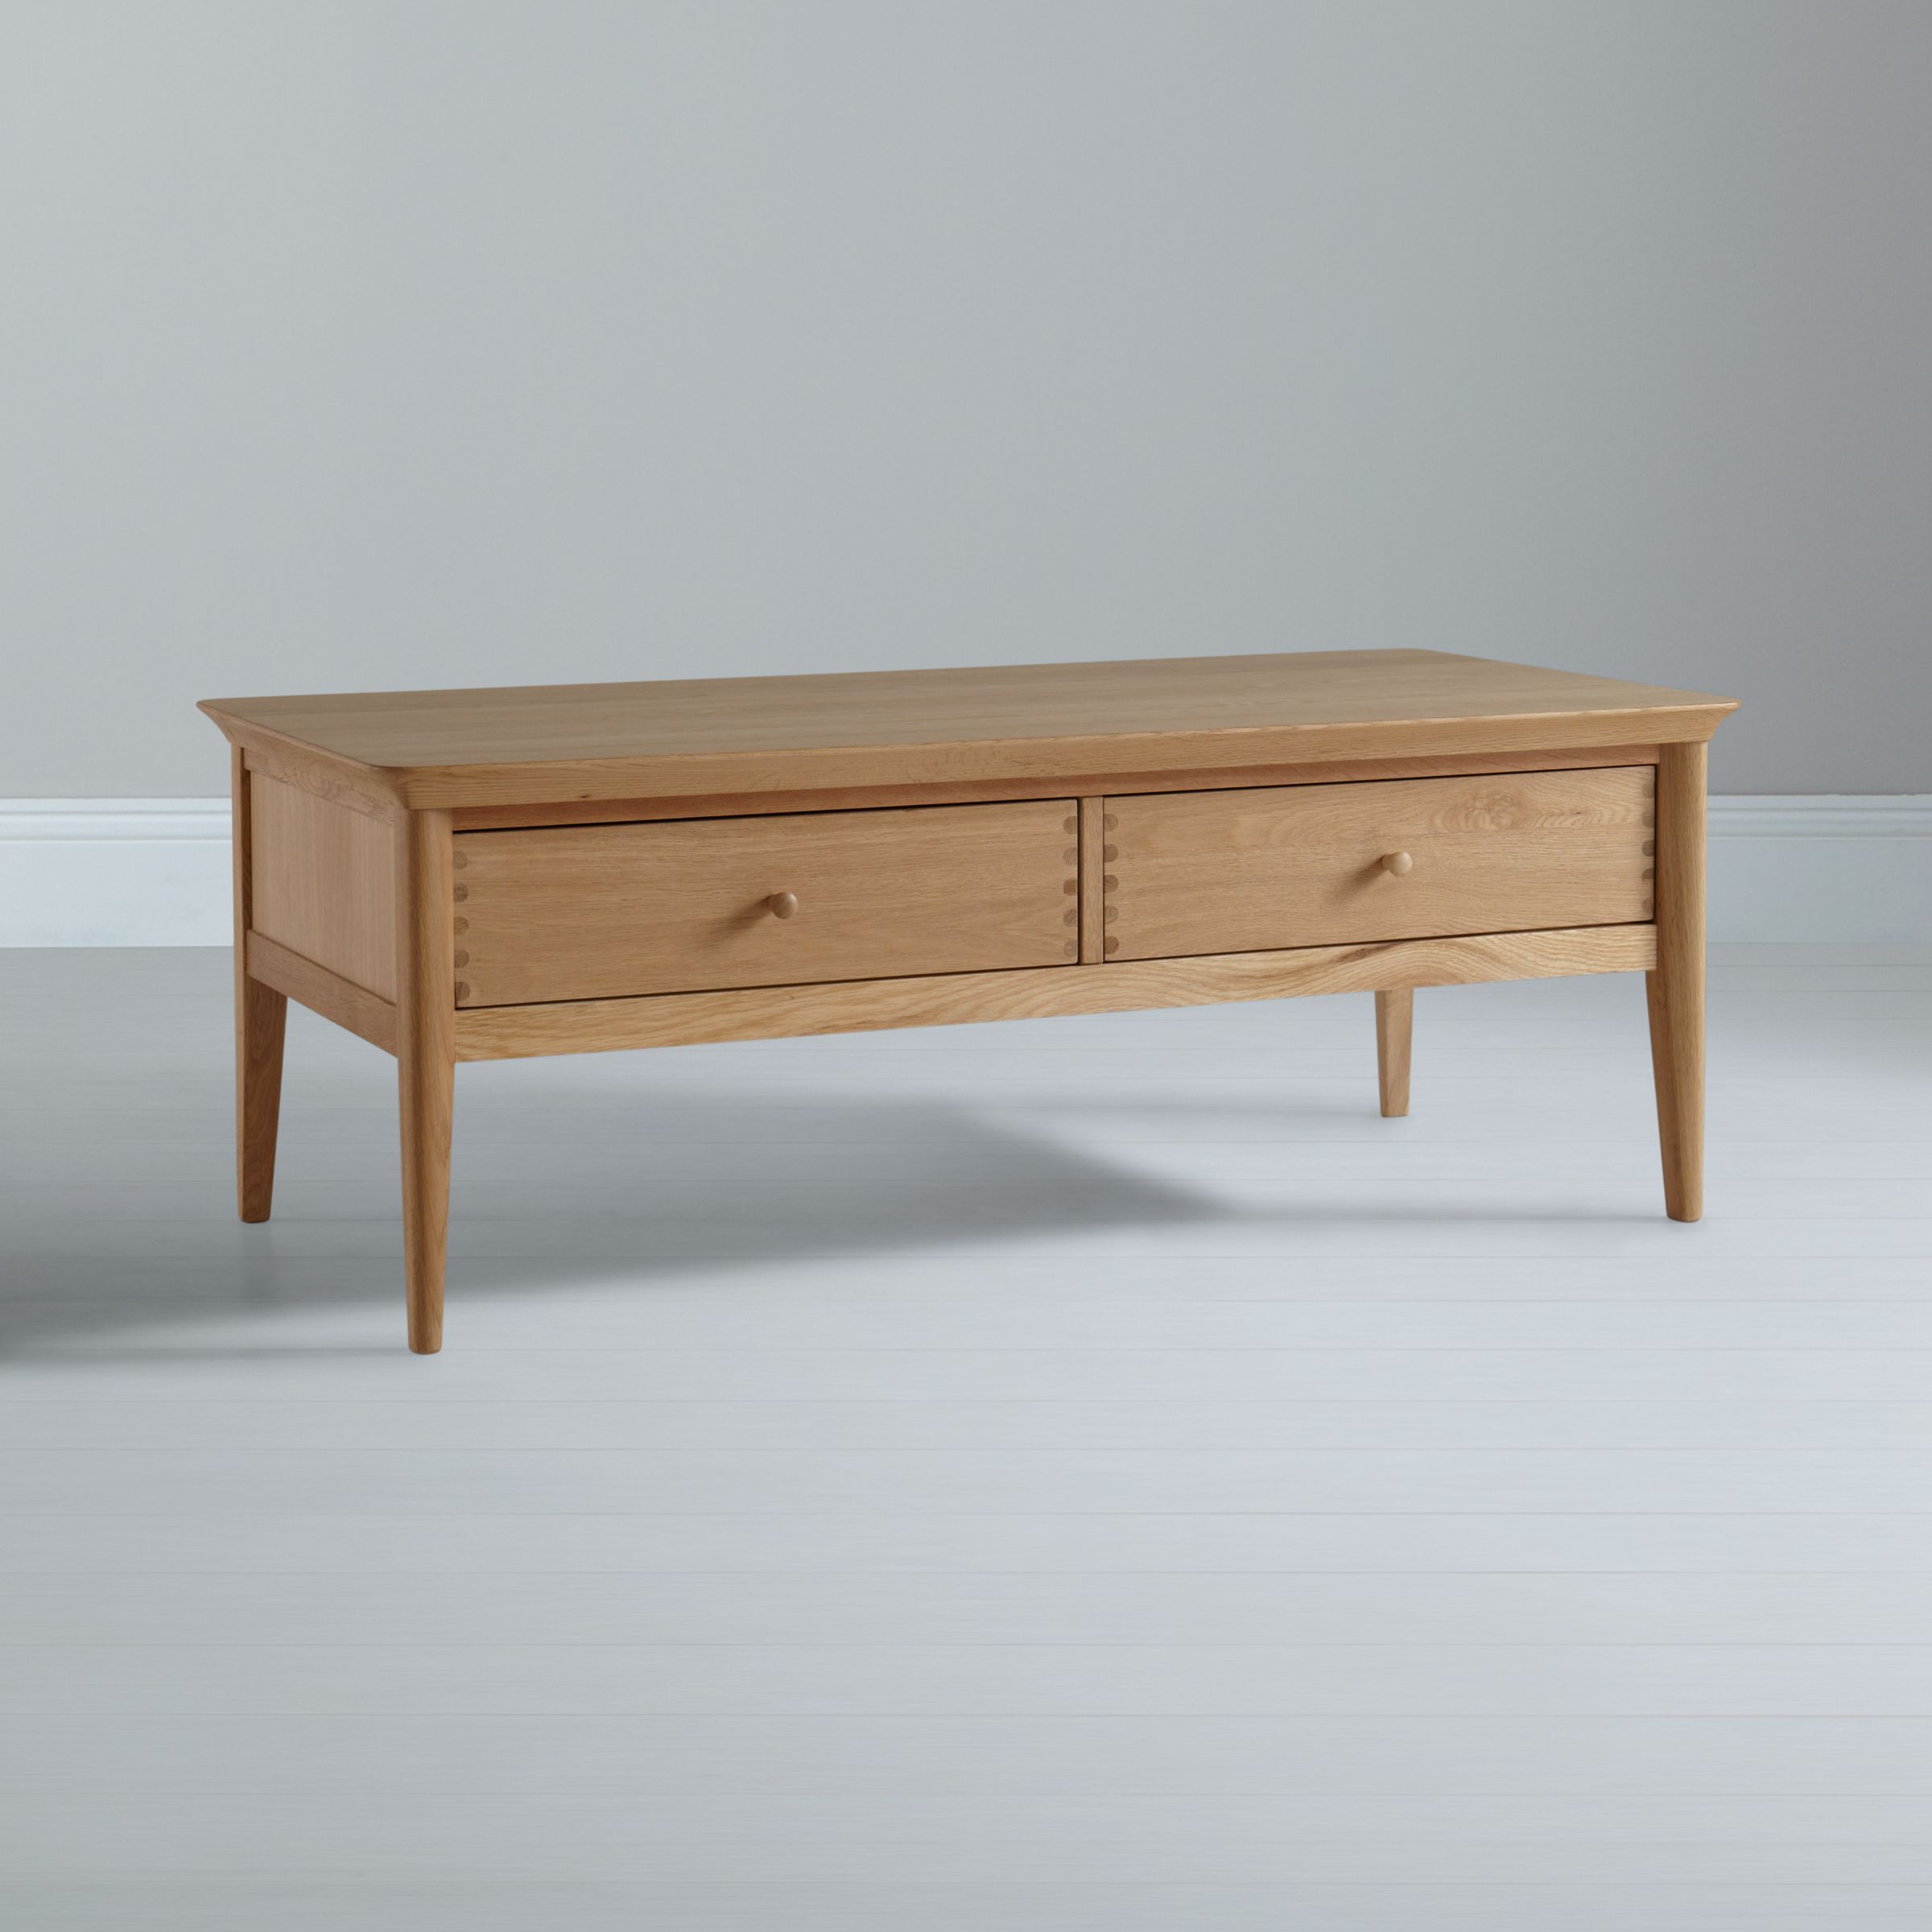 John Lewis Essence Coffee Table, Oak, 120 x 60cm, width 120cm